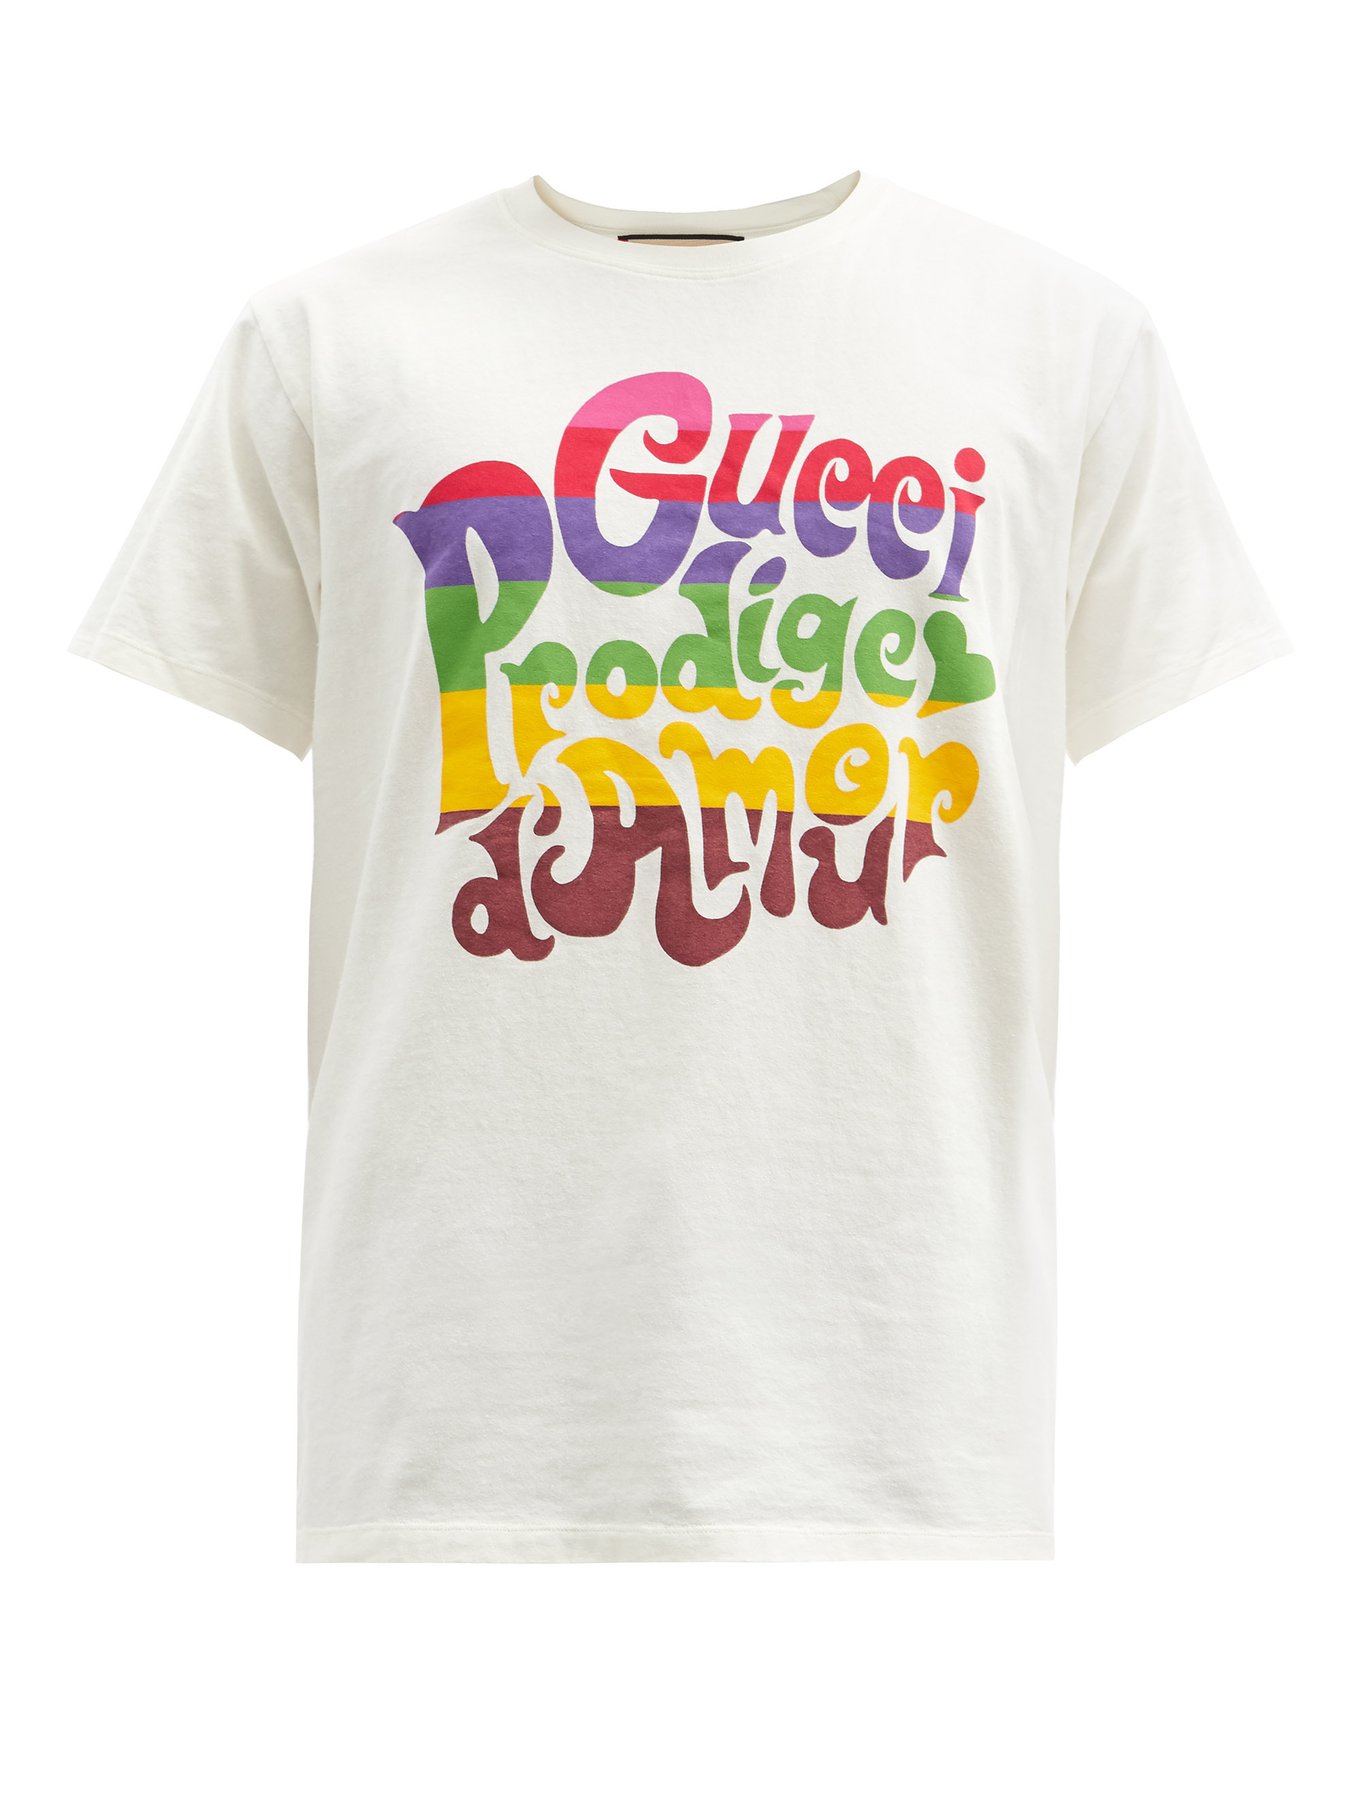 Gucci グッチ Prodige D Amourプリント コットンtシャツ ホワイト Matchesfashion マッチズファッション